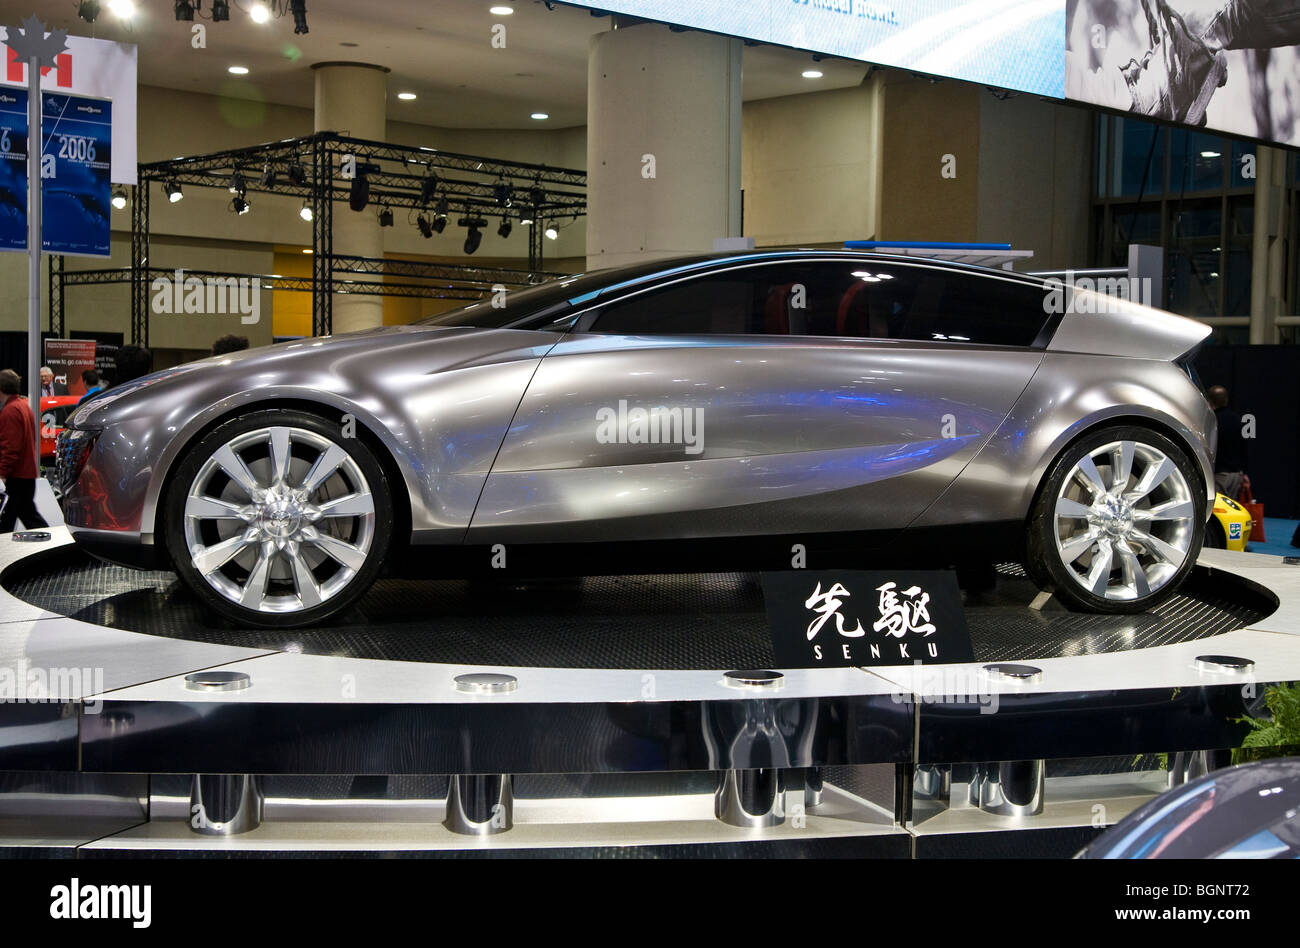 2006 Mazda Senku concept car Stock Photo